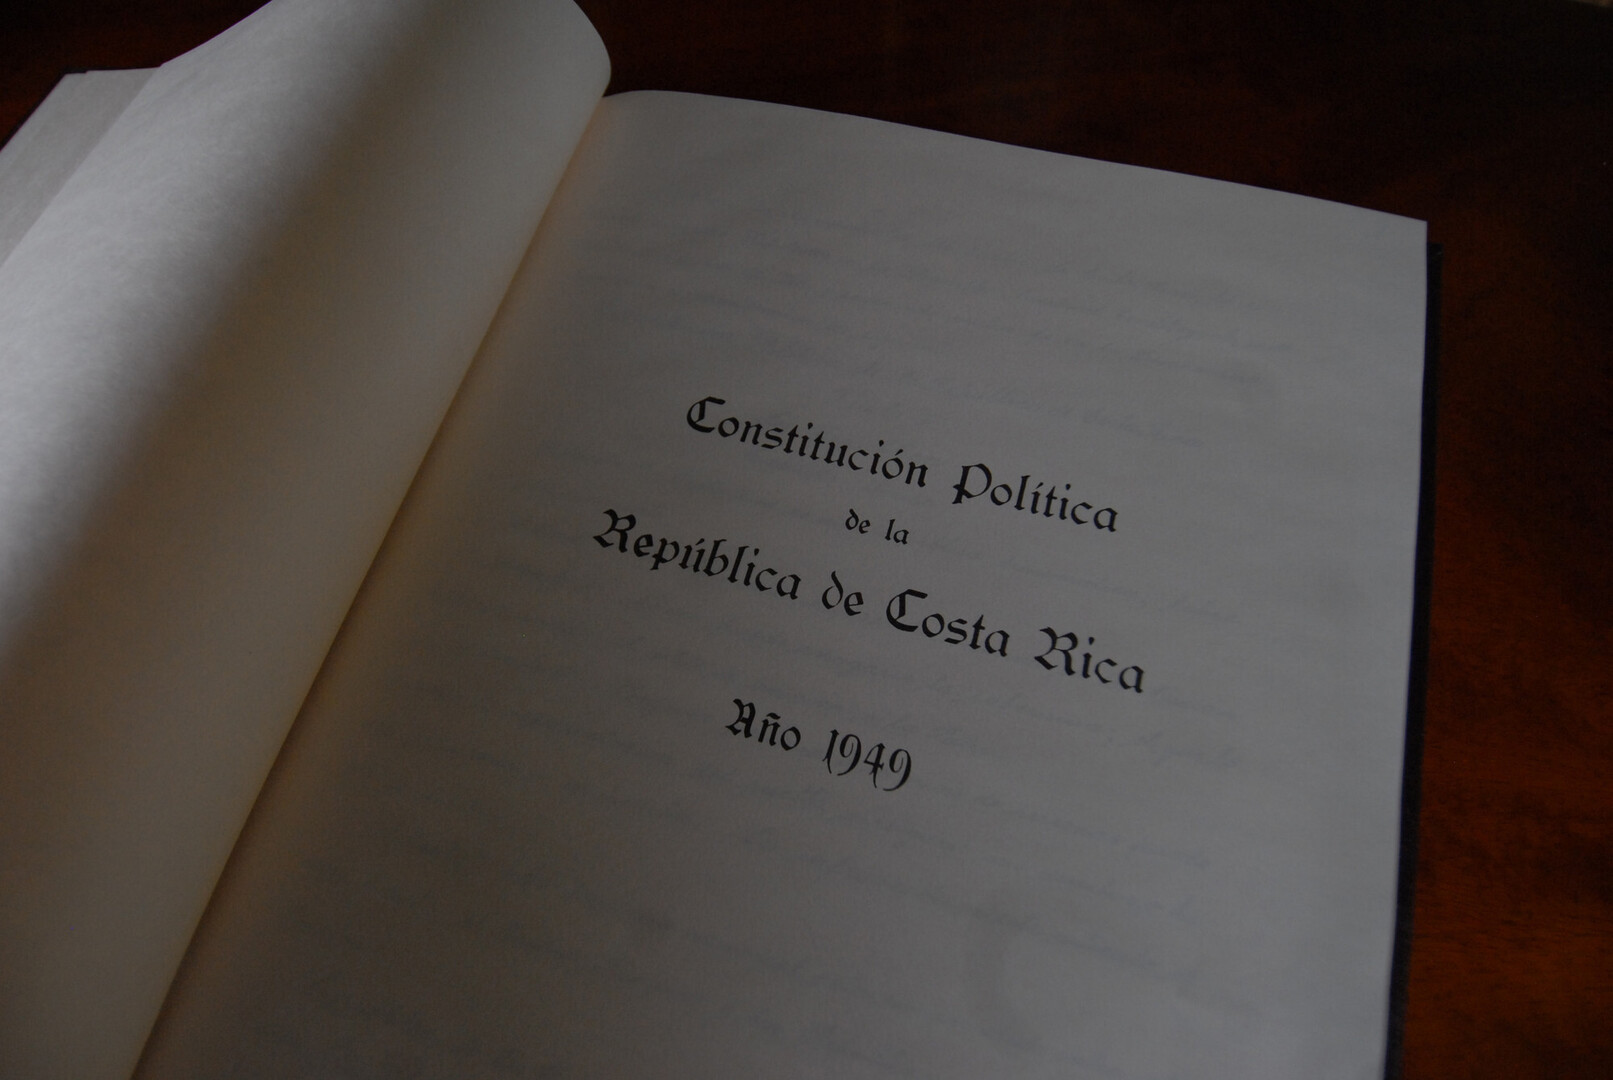 Constitución Política de Costa Rica